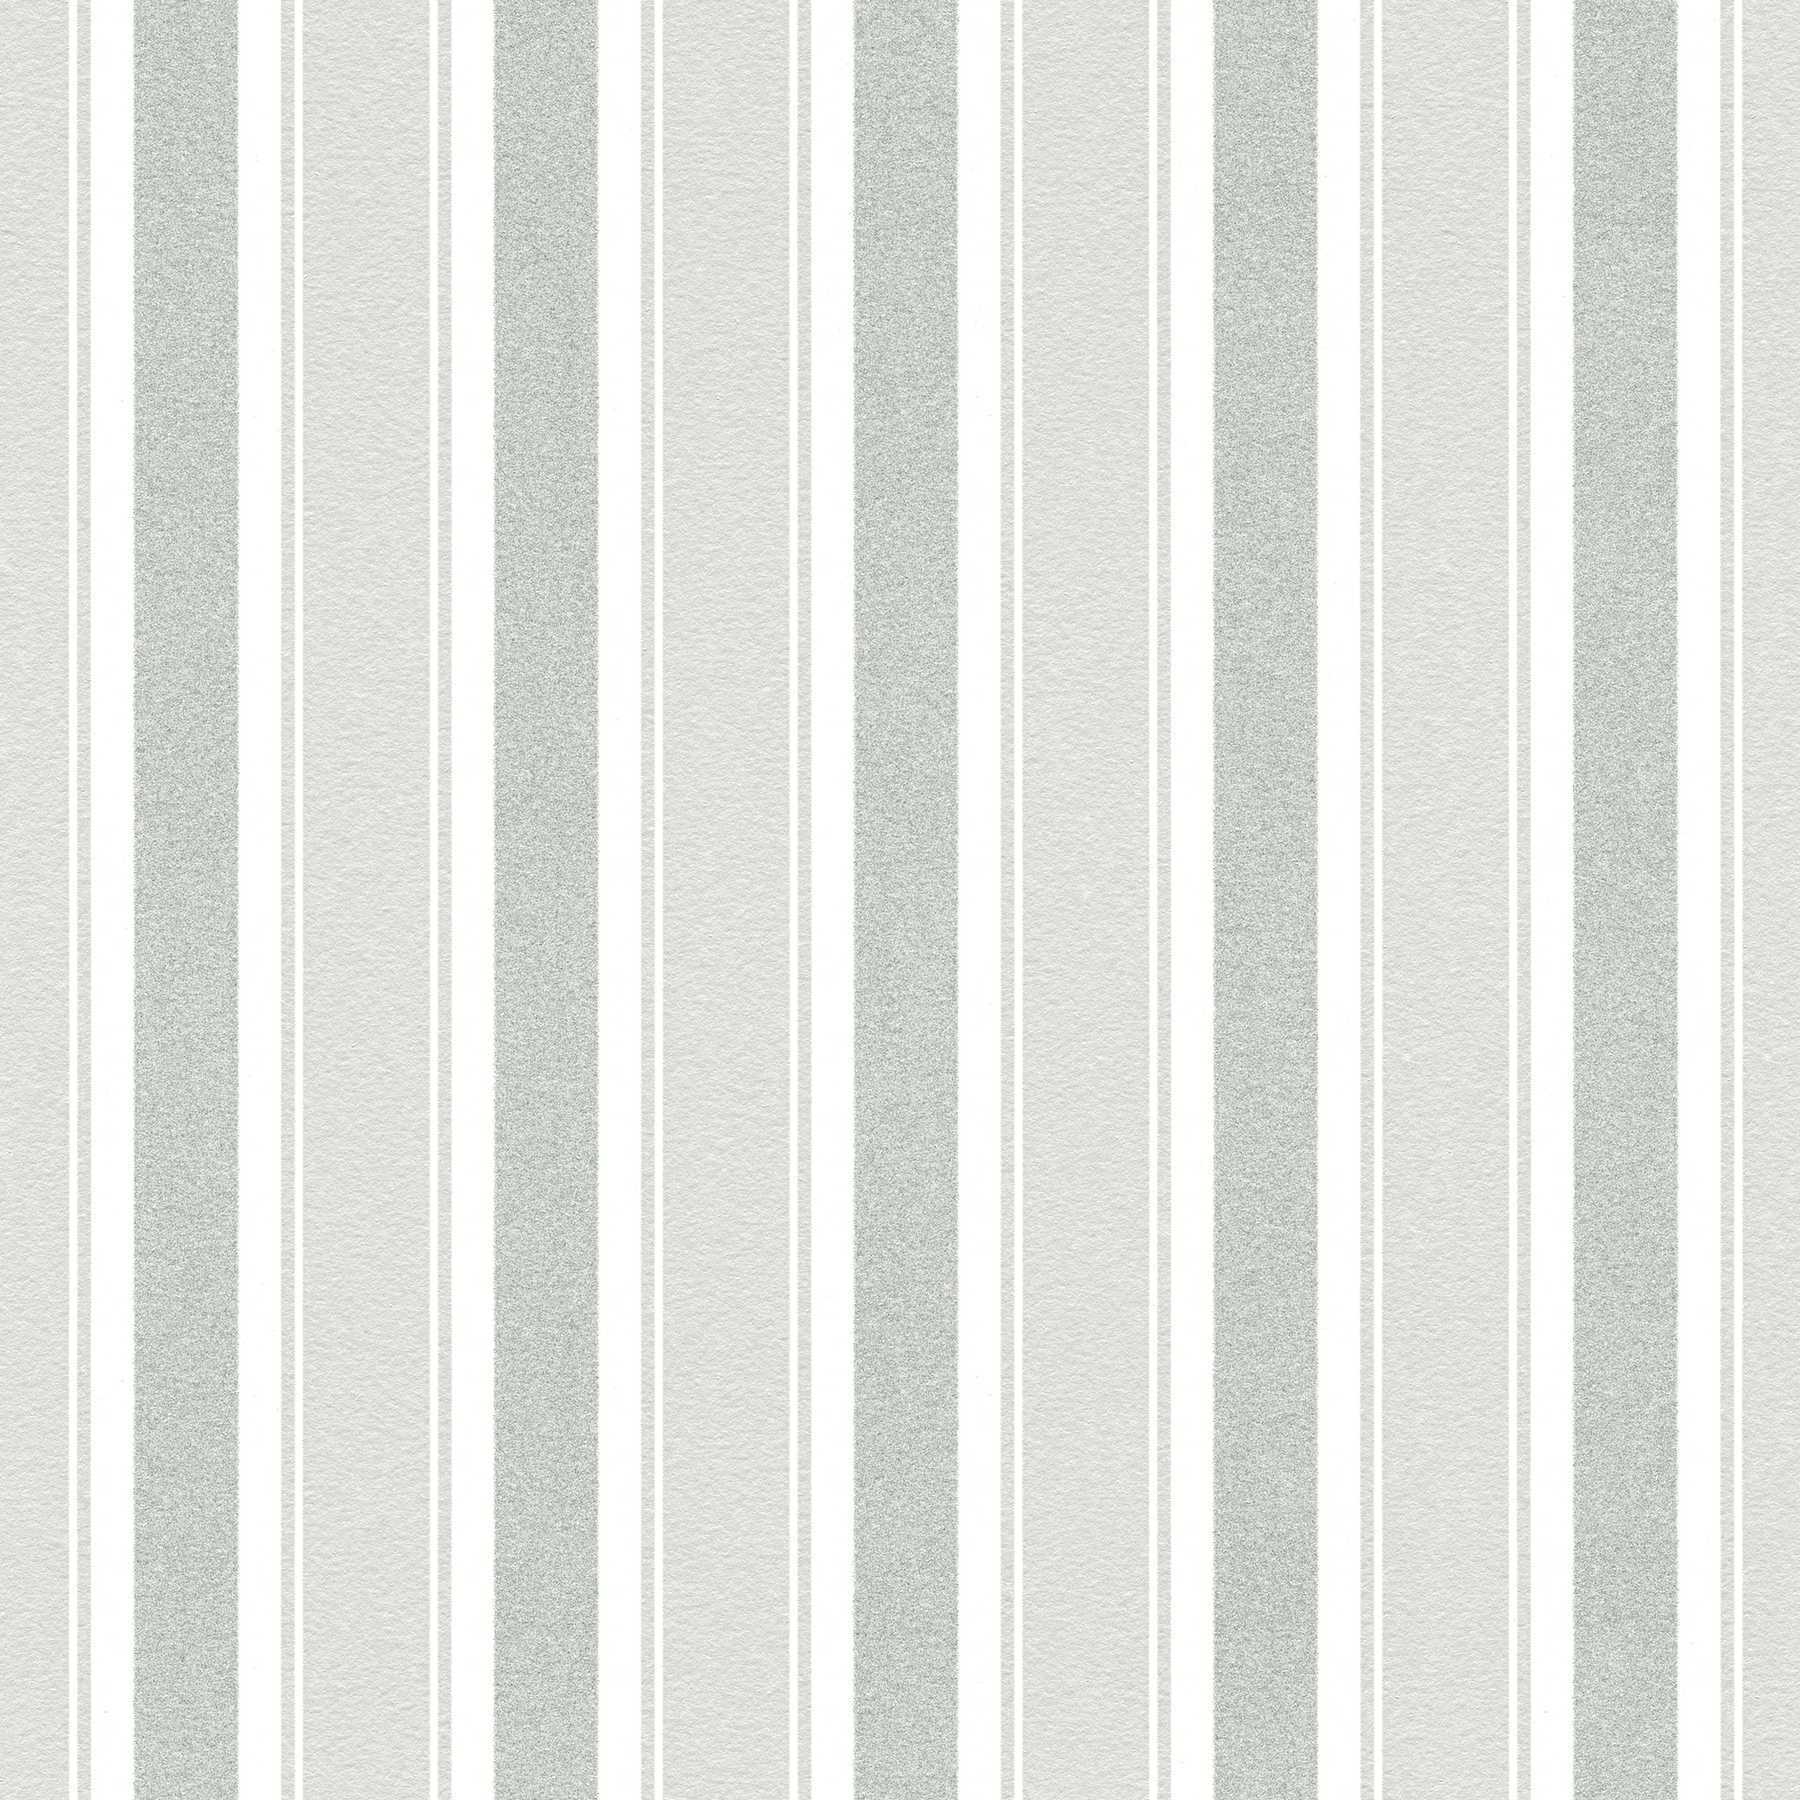 Streifentapete mit Glitzereffekt – Grau, Weiß
